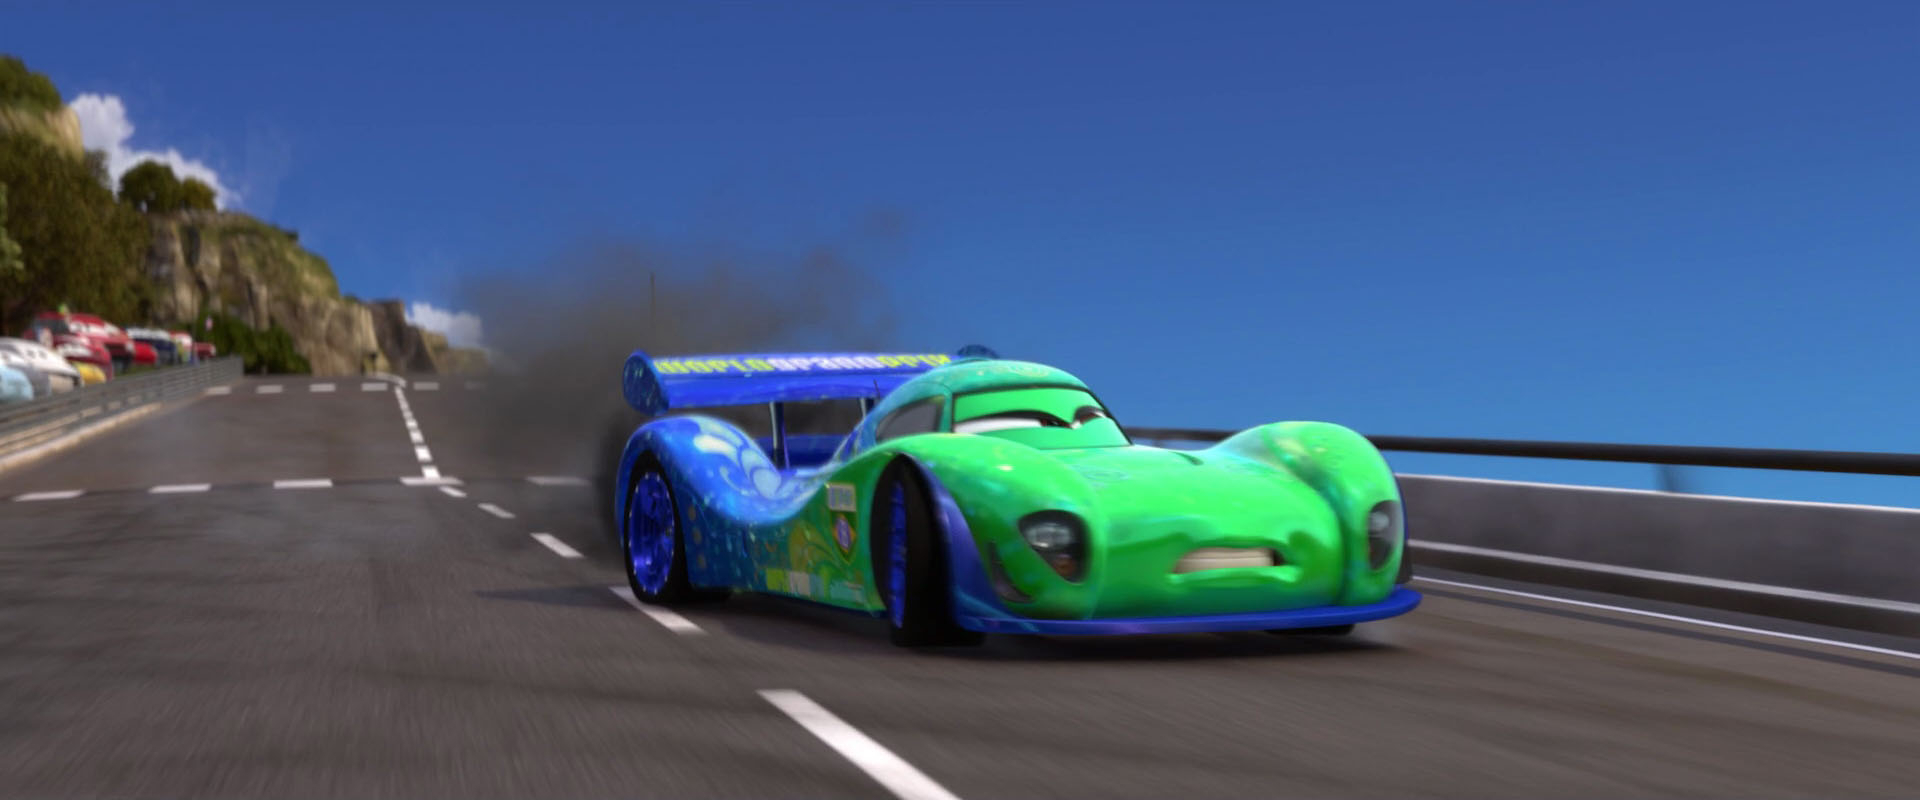 Carla Veloso, Personnage Dans &quot;Cars 2&quot;. • Pixar • Disney concernant Dessinez C&amp;#039;Est Disney 2,